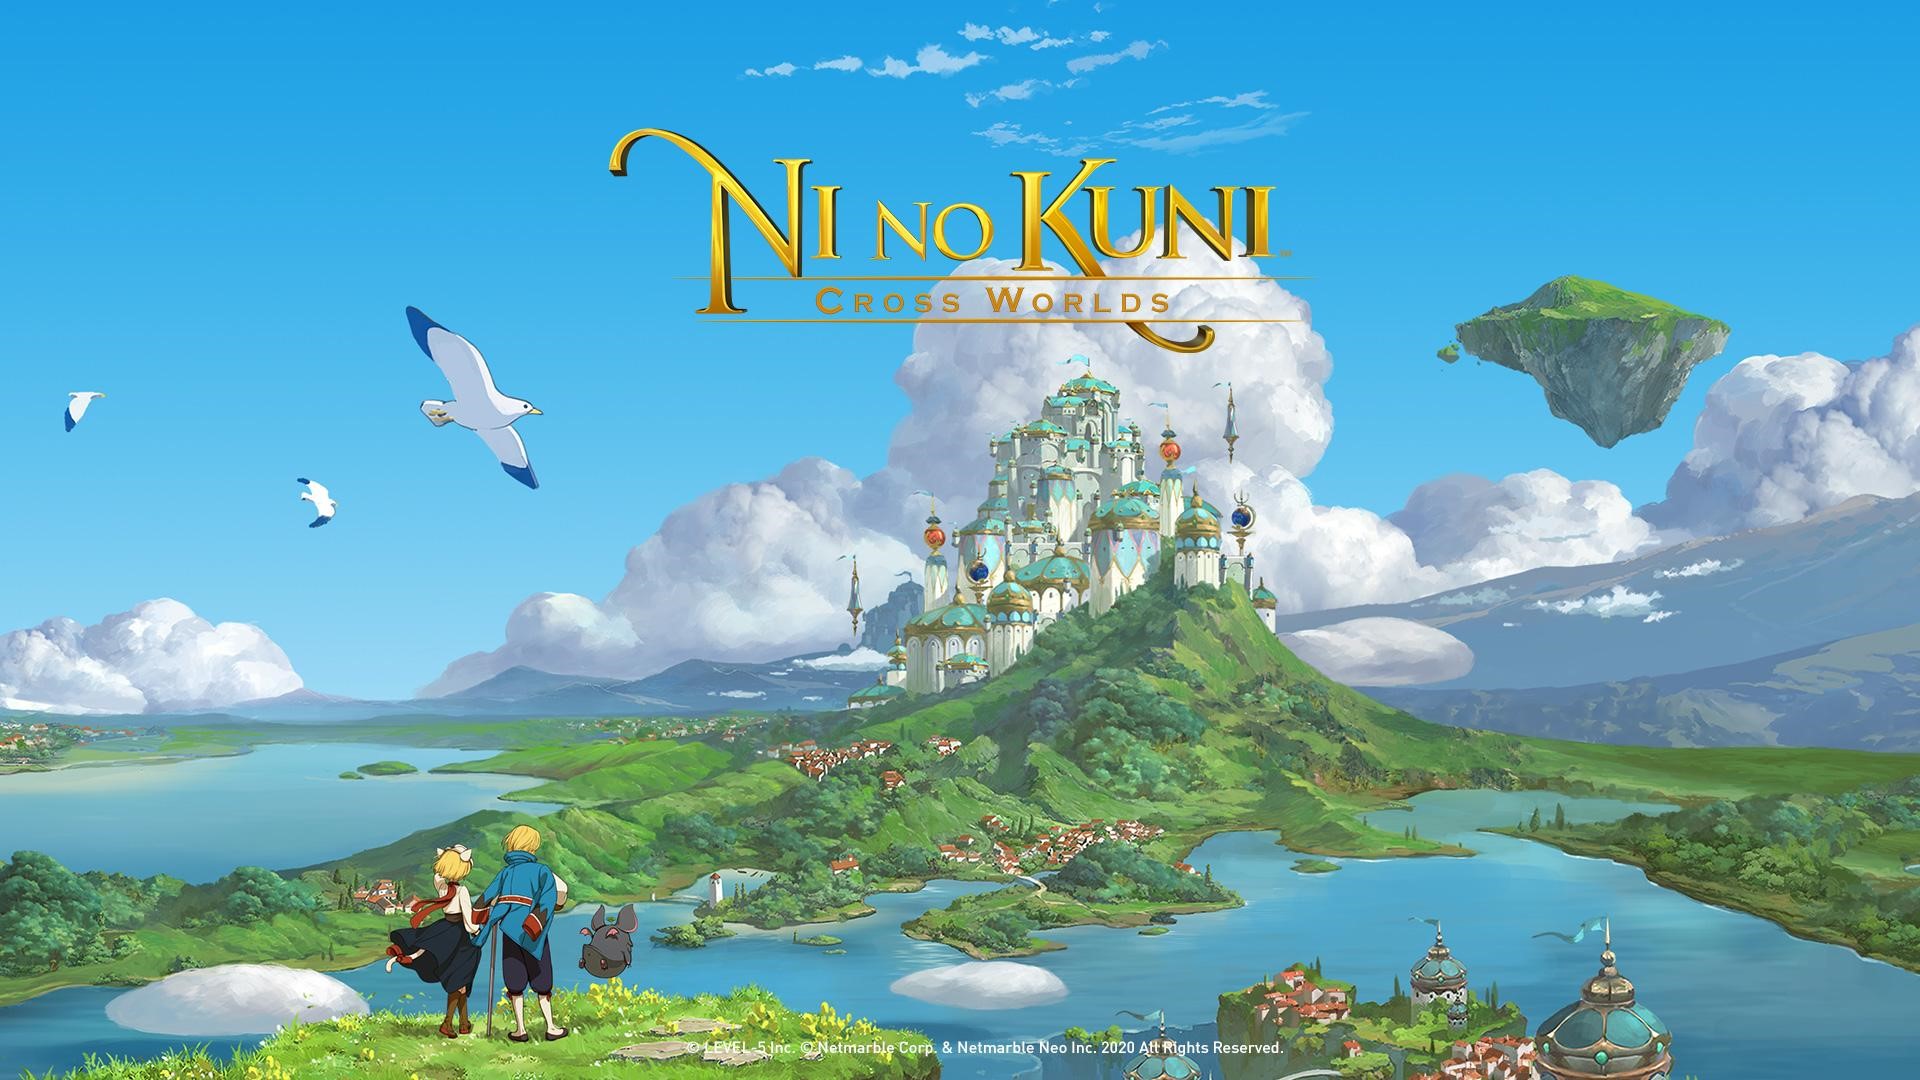 Ni no Kuni: Cross Worlds เตรียมเปิดให้เล่นบนมือถือ 10 มิ.ย. นี้ ในญี่ปุ่น, เกาหลีใต้ และไต้หวัน